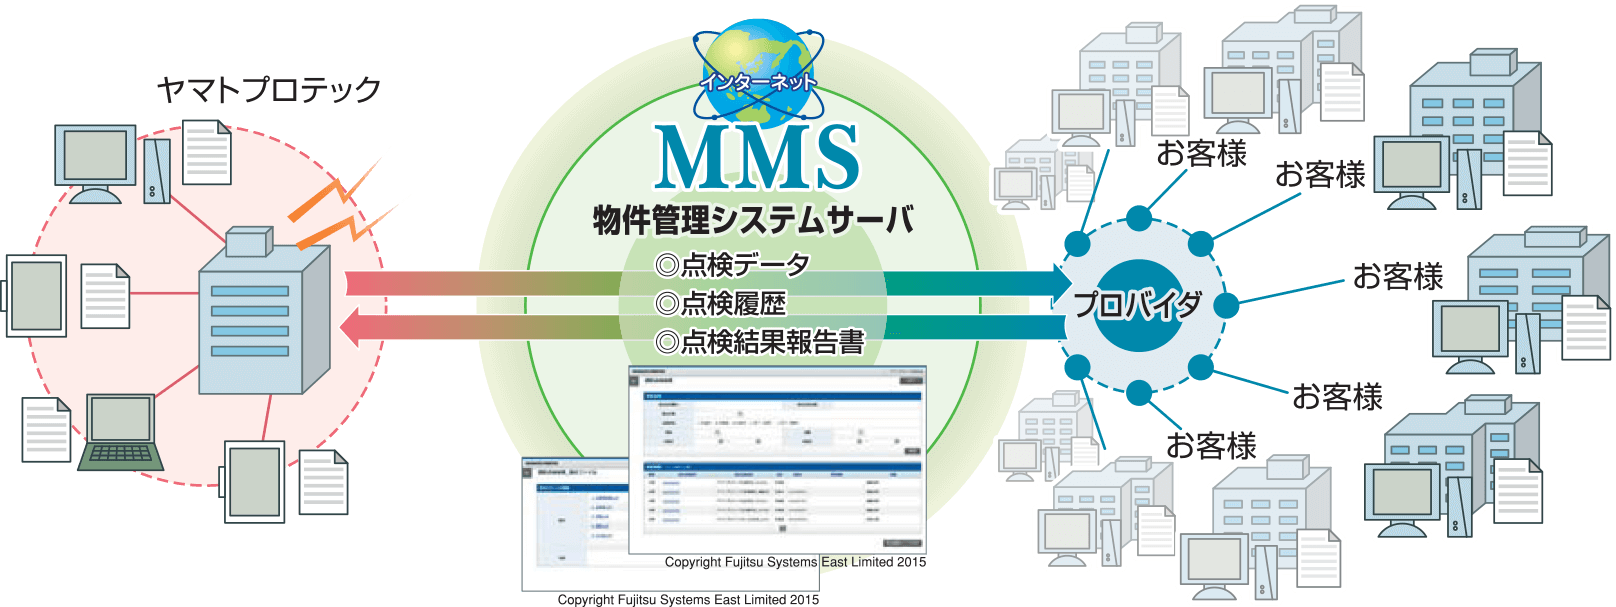 MMS(メンテナンスマネジメントシステム)の特徴